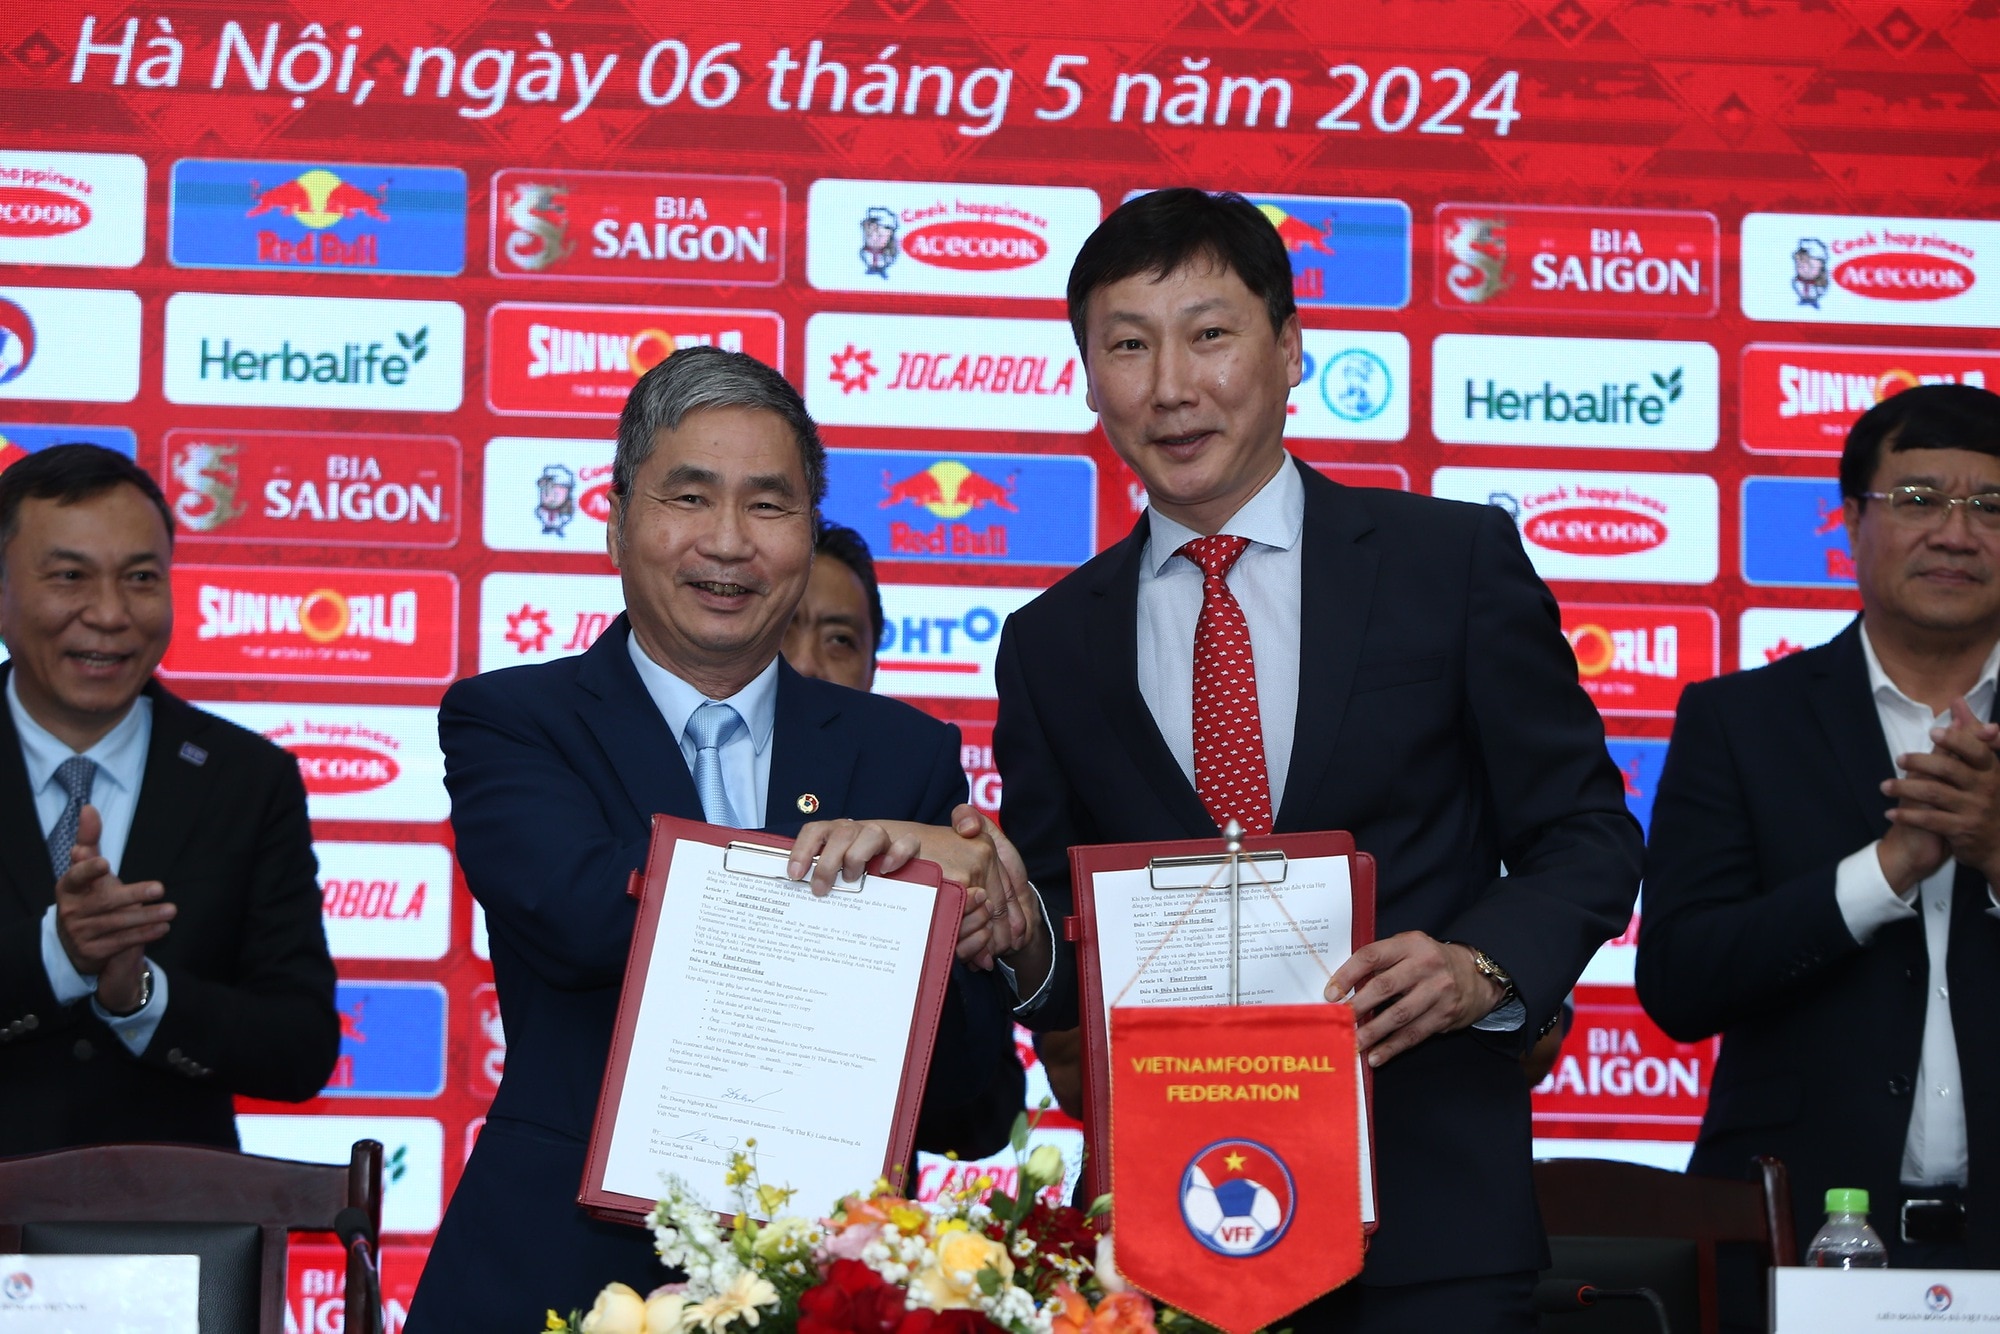 Tân HLV trưởng Kim Sang-sik chính thức đặt bút vào bản hợp đồng 2 năm trên cương vị HLV trưởng đội tuyển Việt Nam - Ảnh 2.